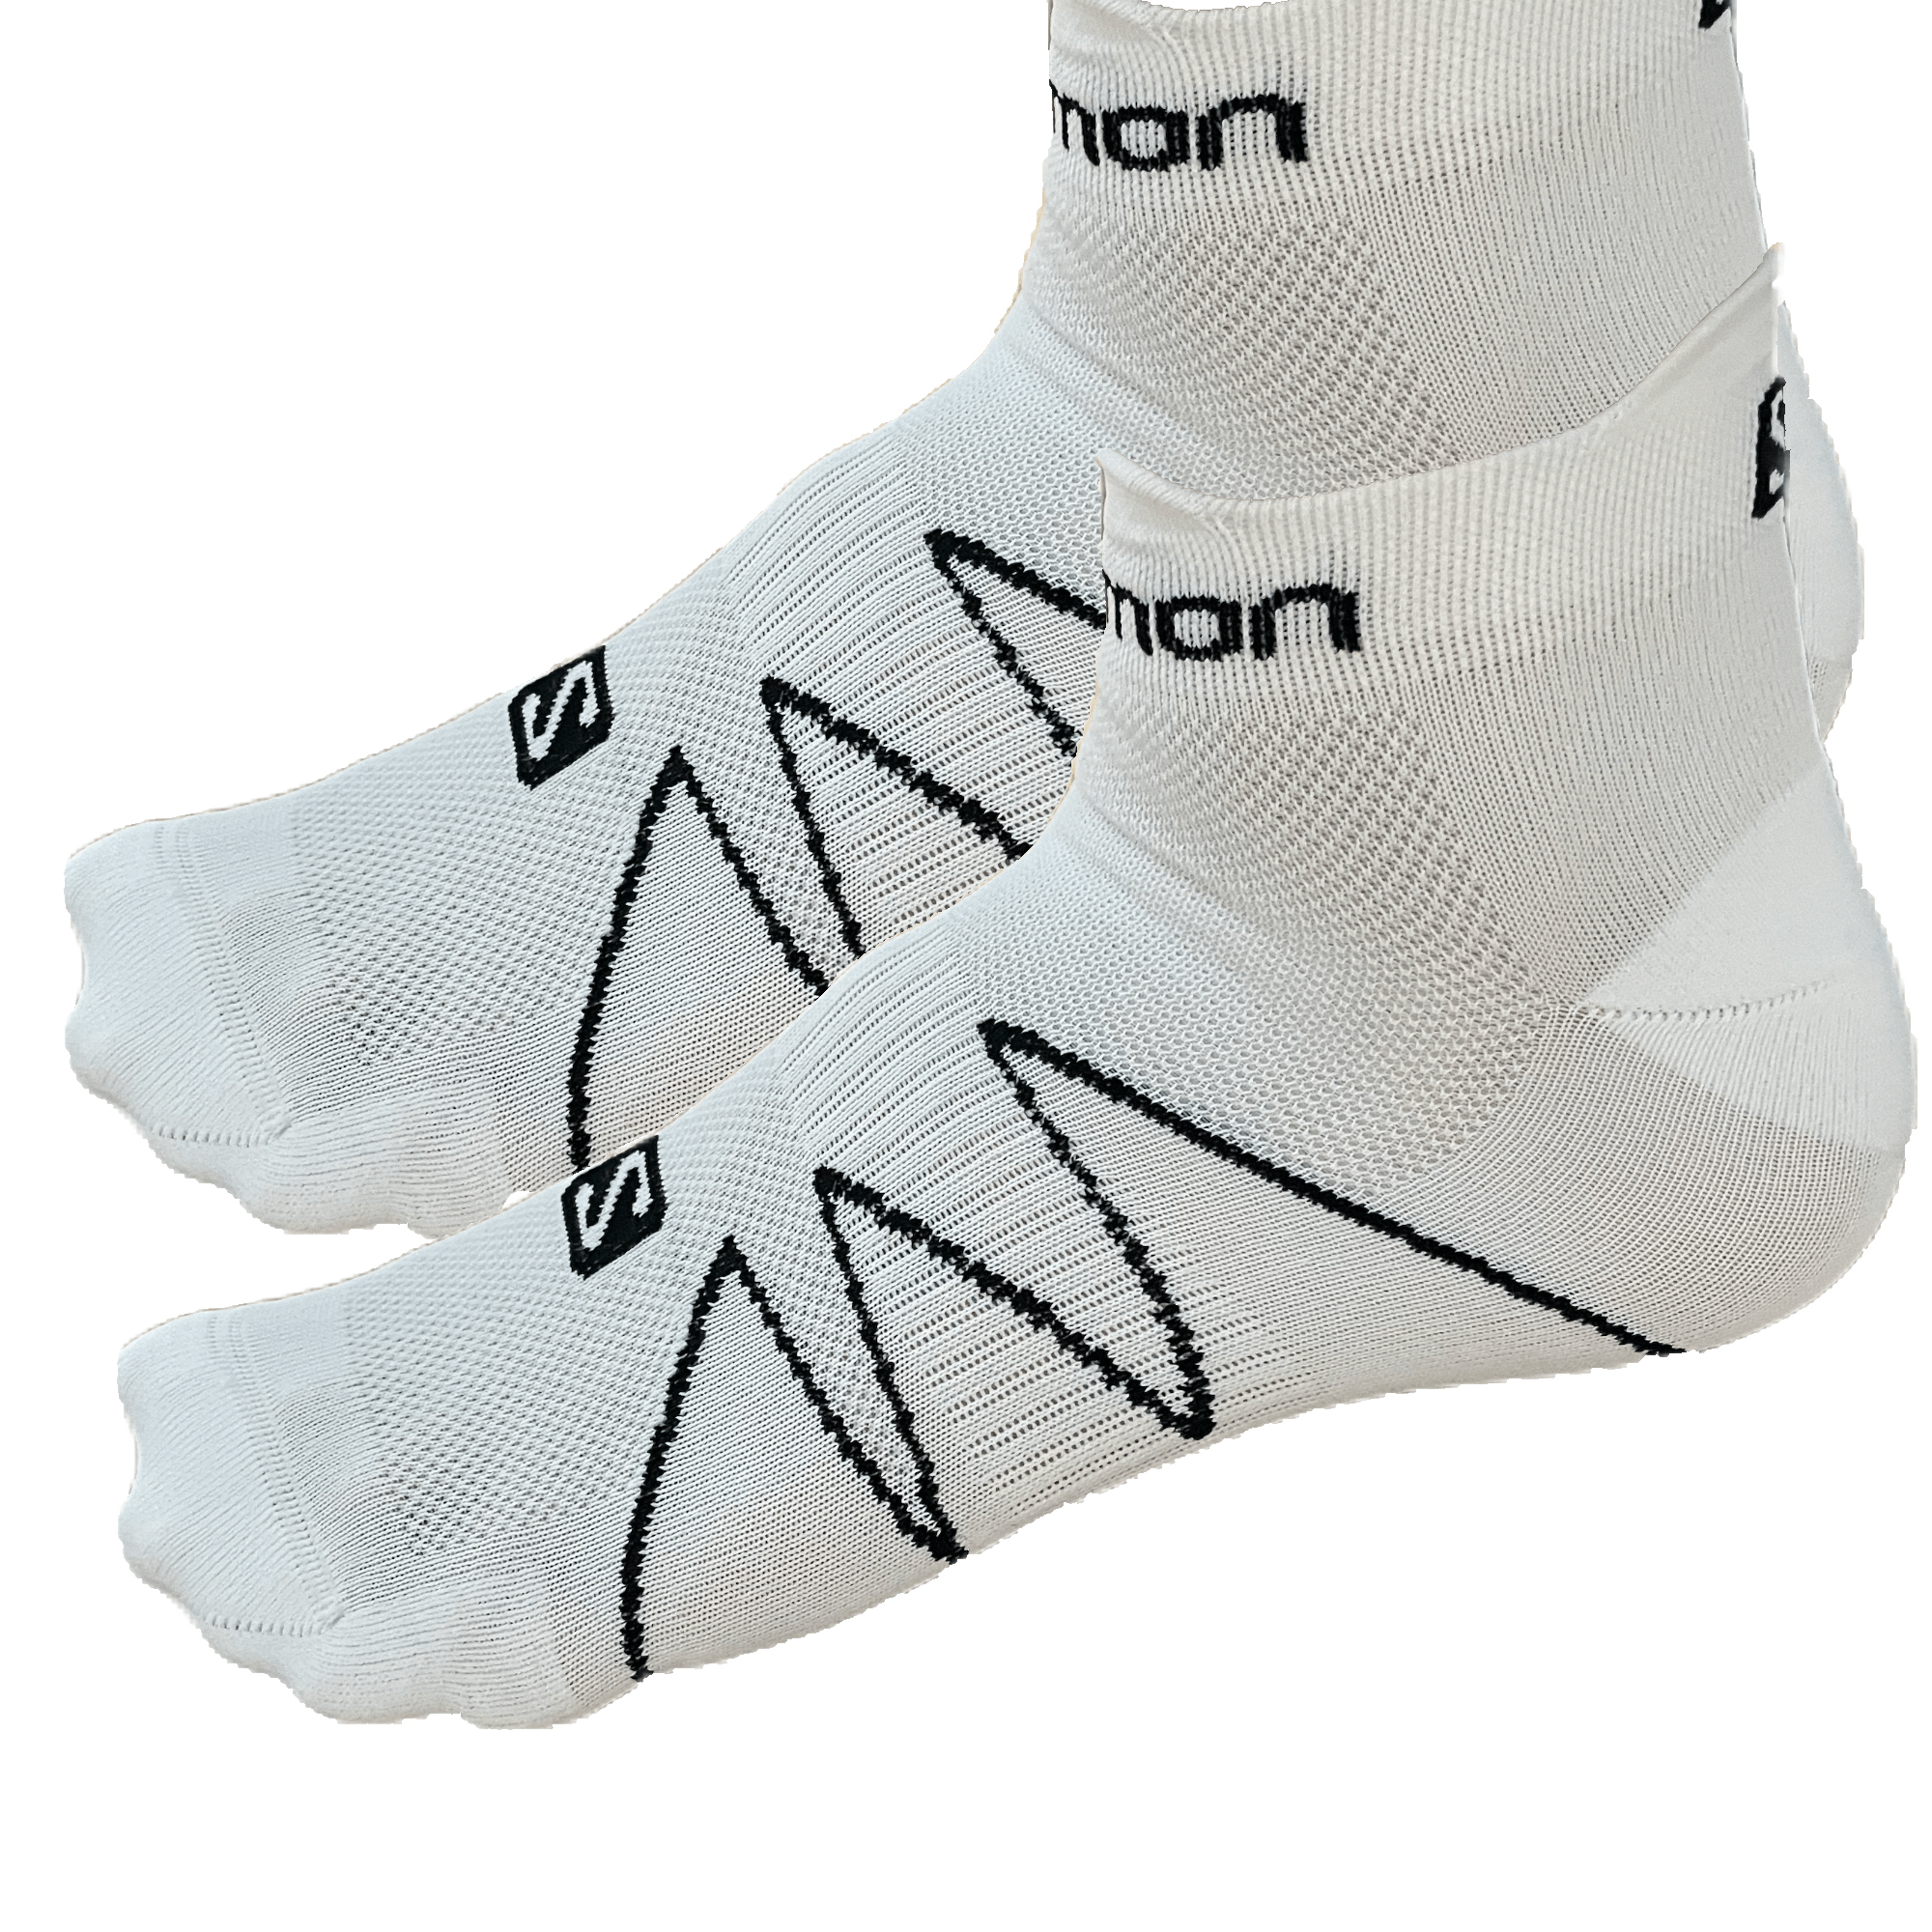 Sneaker Socken Salomon Sonic 2 Pack Laufsocken Schwarz Weiß 